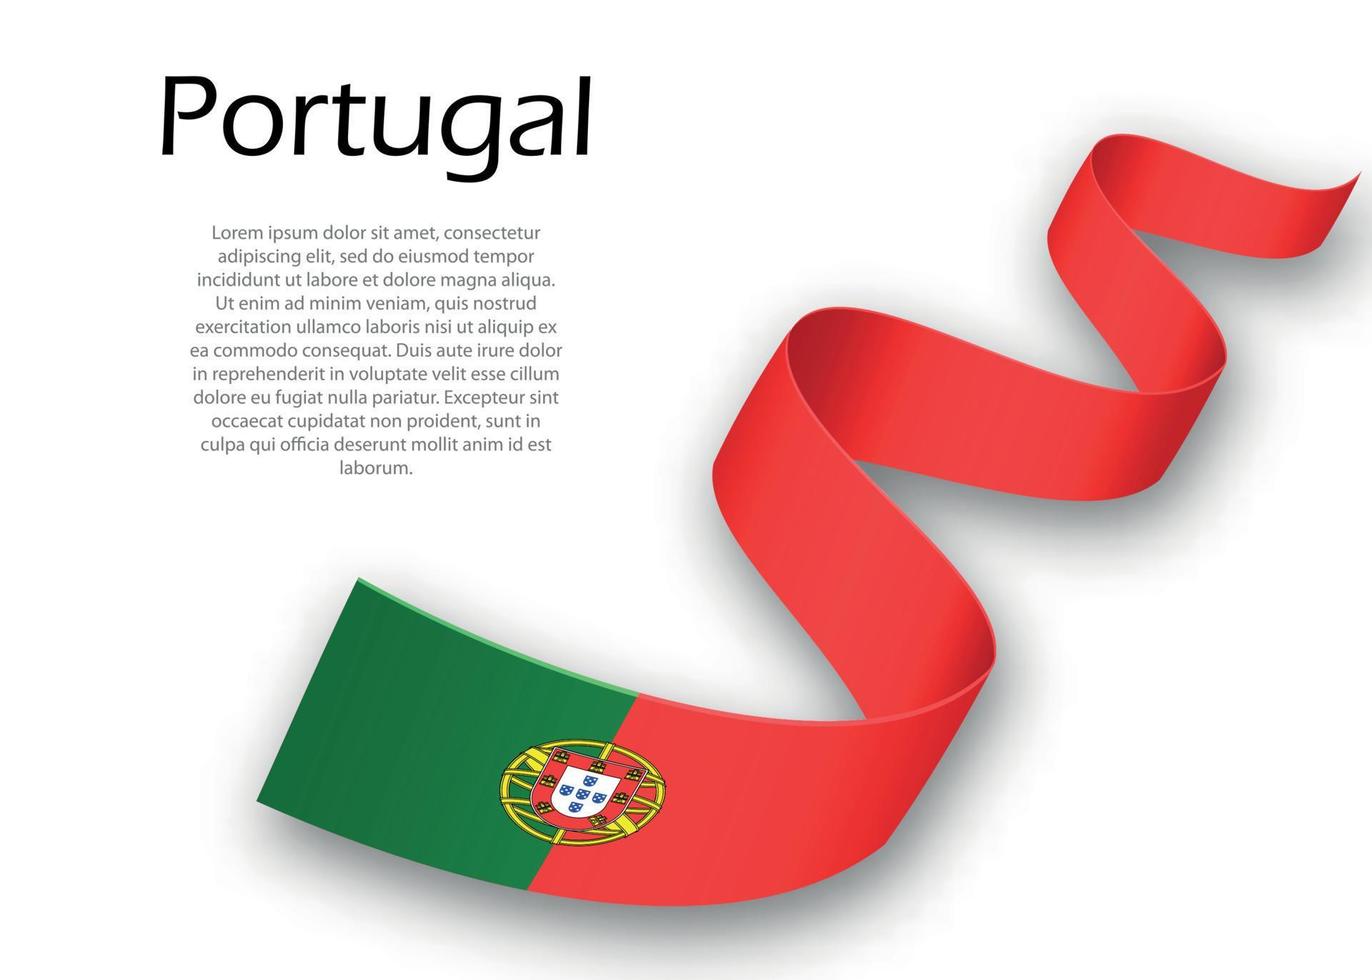 schwenkendes band oder banner mit flagge von portugal vektor